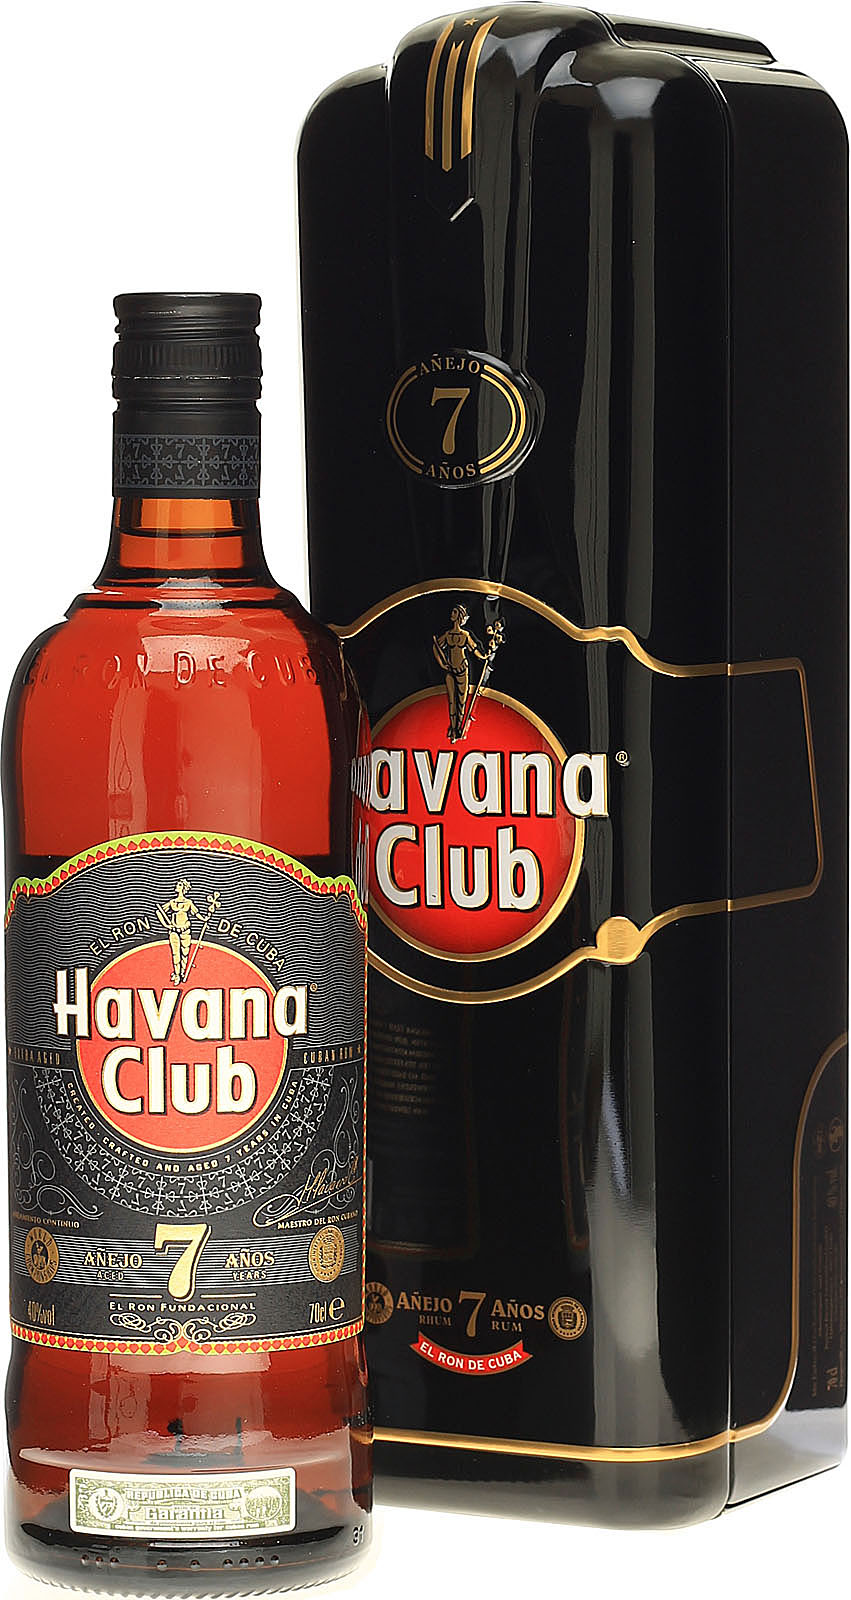 Havana Club 7 Jahre in der Metallbox kommt mit 0 7l und 40% Vol